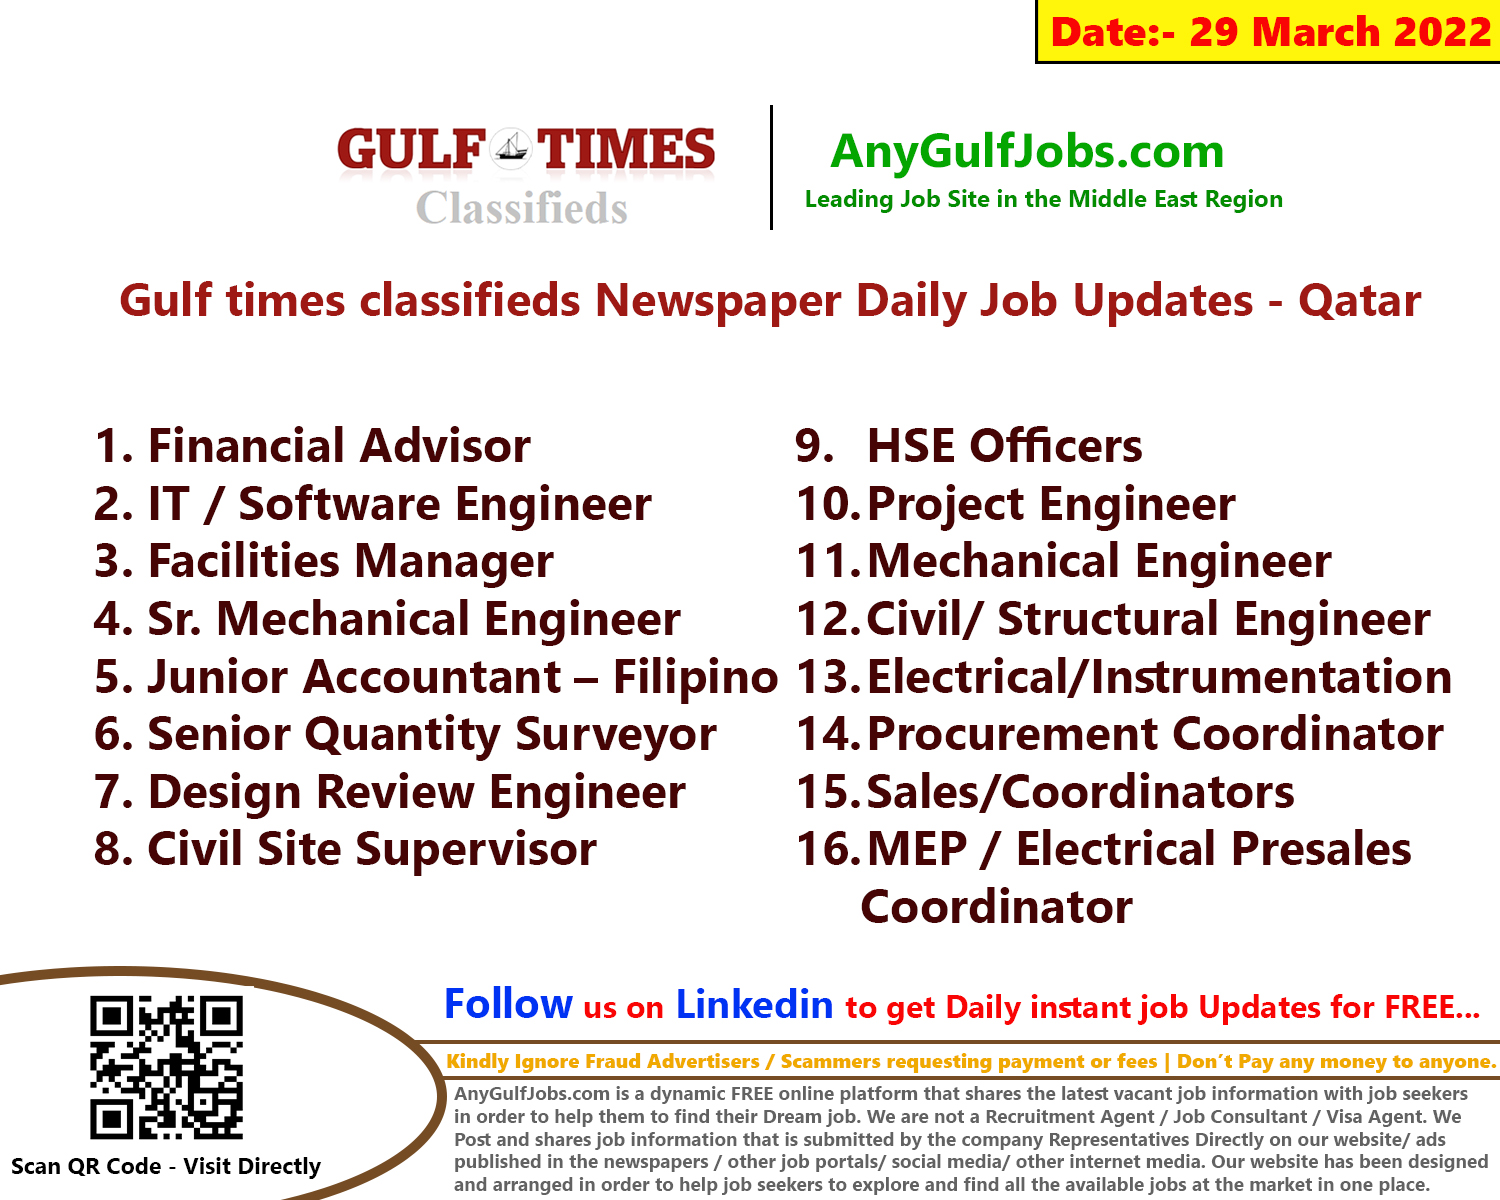 Gulf times classifieds Job Vacancies Qatar - 29 March 2022